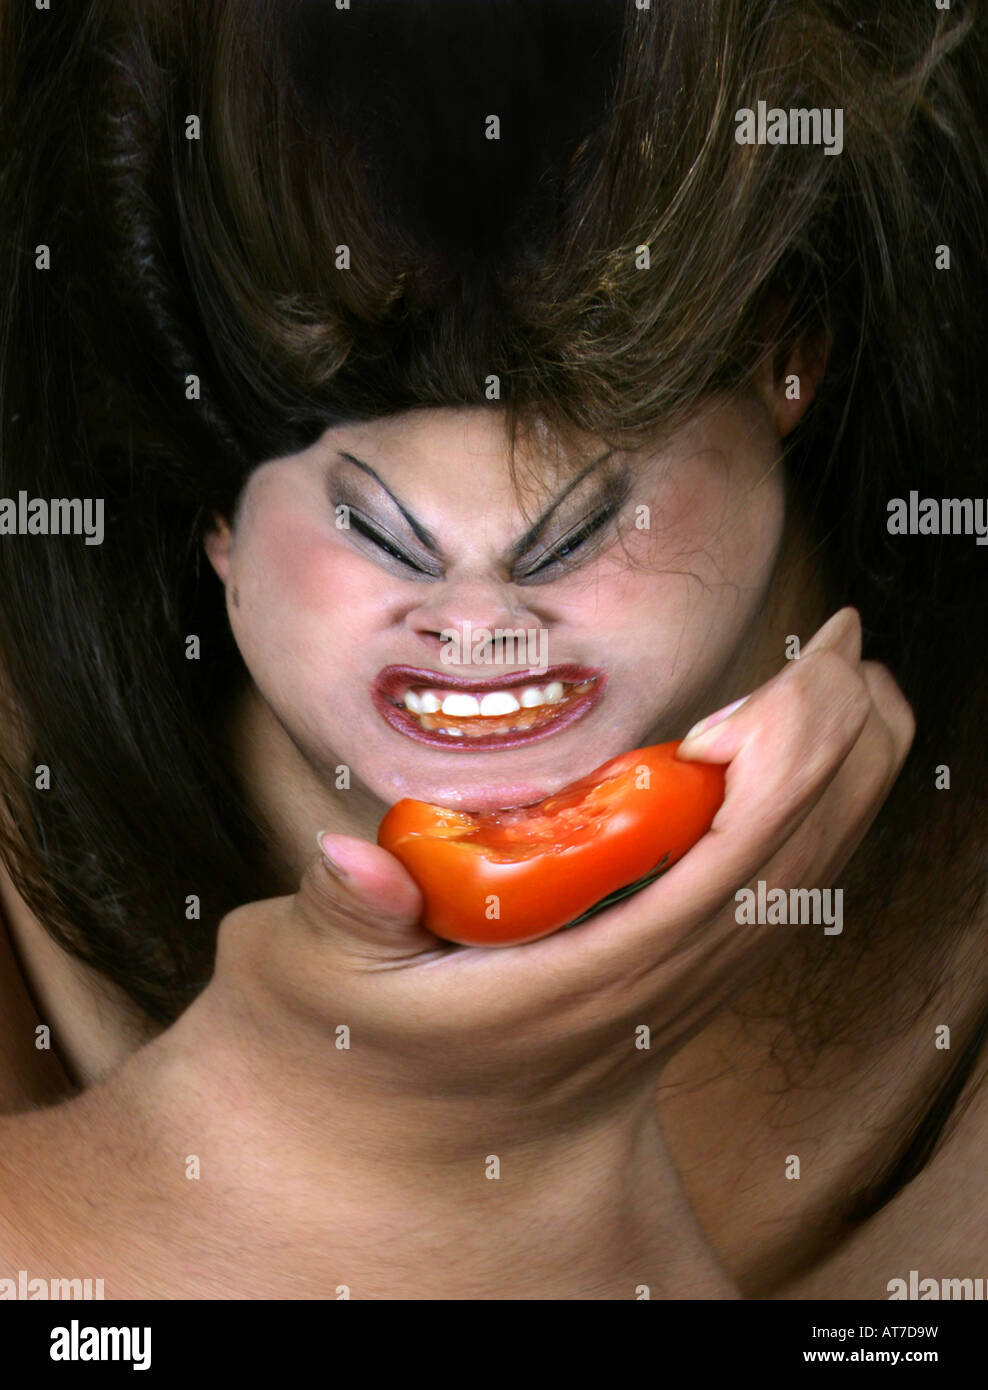 Fantasy Ritratto di una donna di mangiare un pomodoro - Immagine distorta Foto Stock